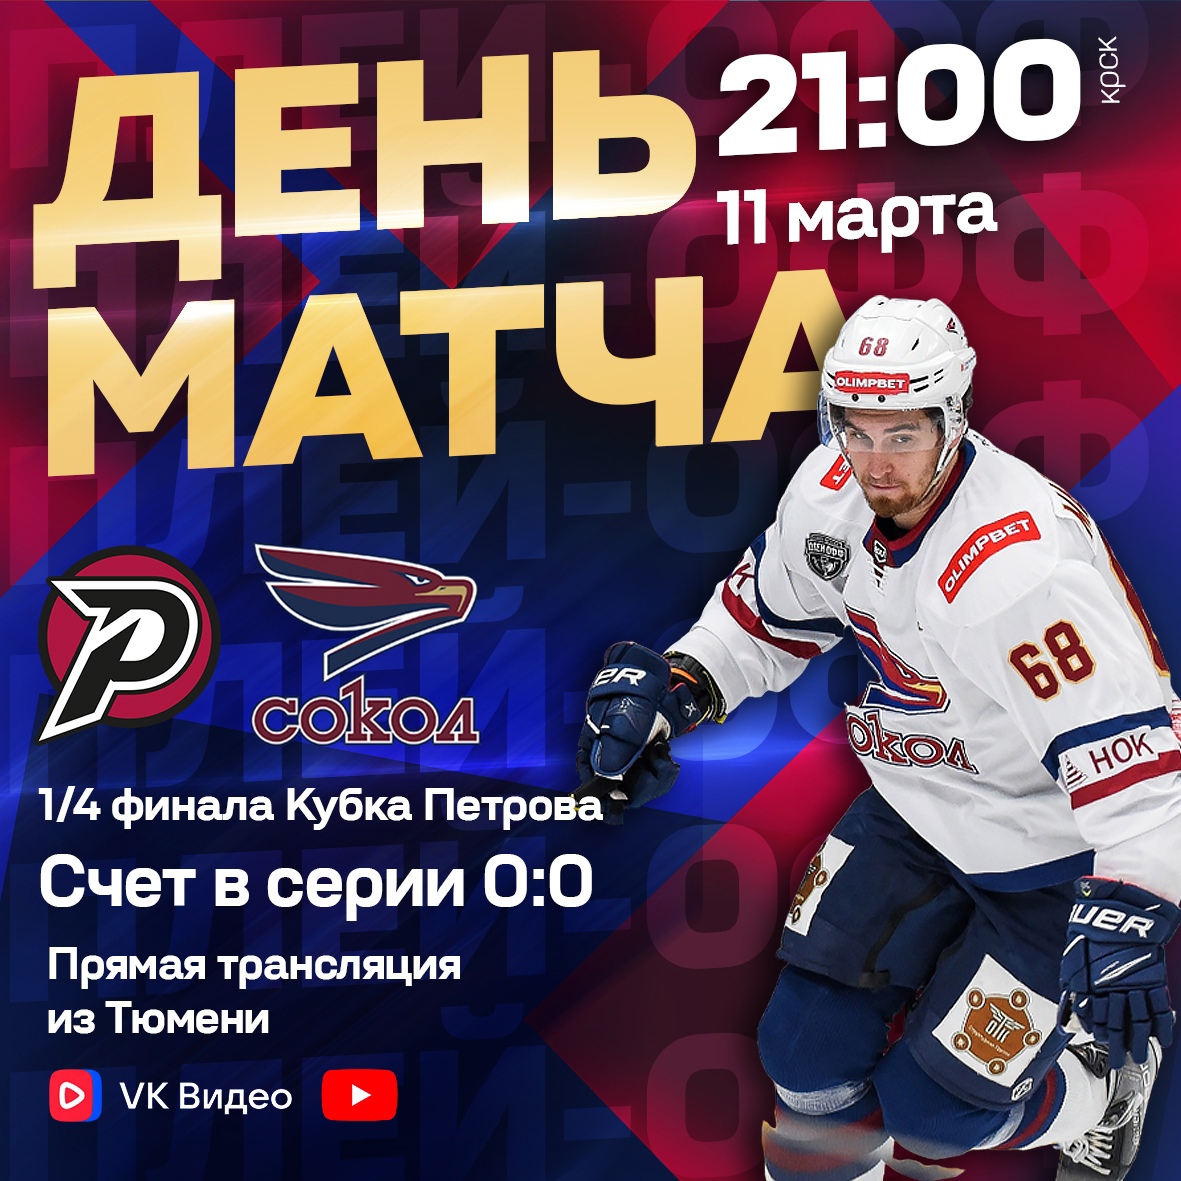 Сегодня красноярский хоккейный «Сокол» проведет первый матч в рамках 1/4 финала Кубка Петрова